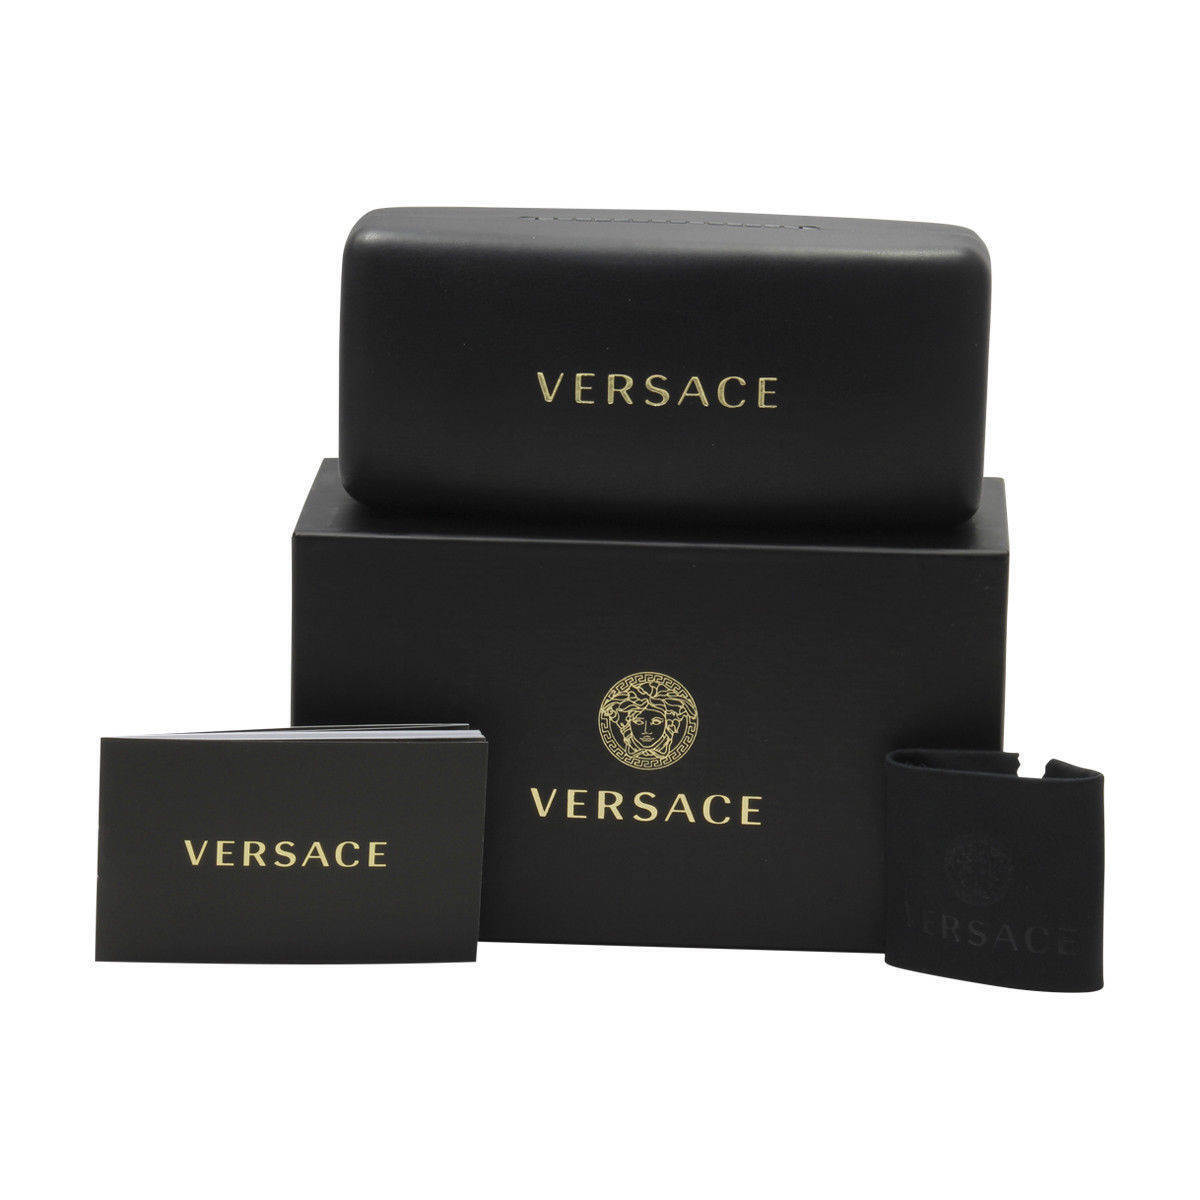 Versace VE1289-1412-57  New Eyeglasses